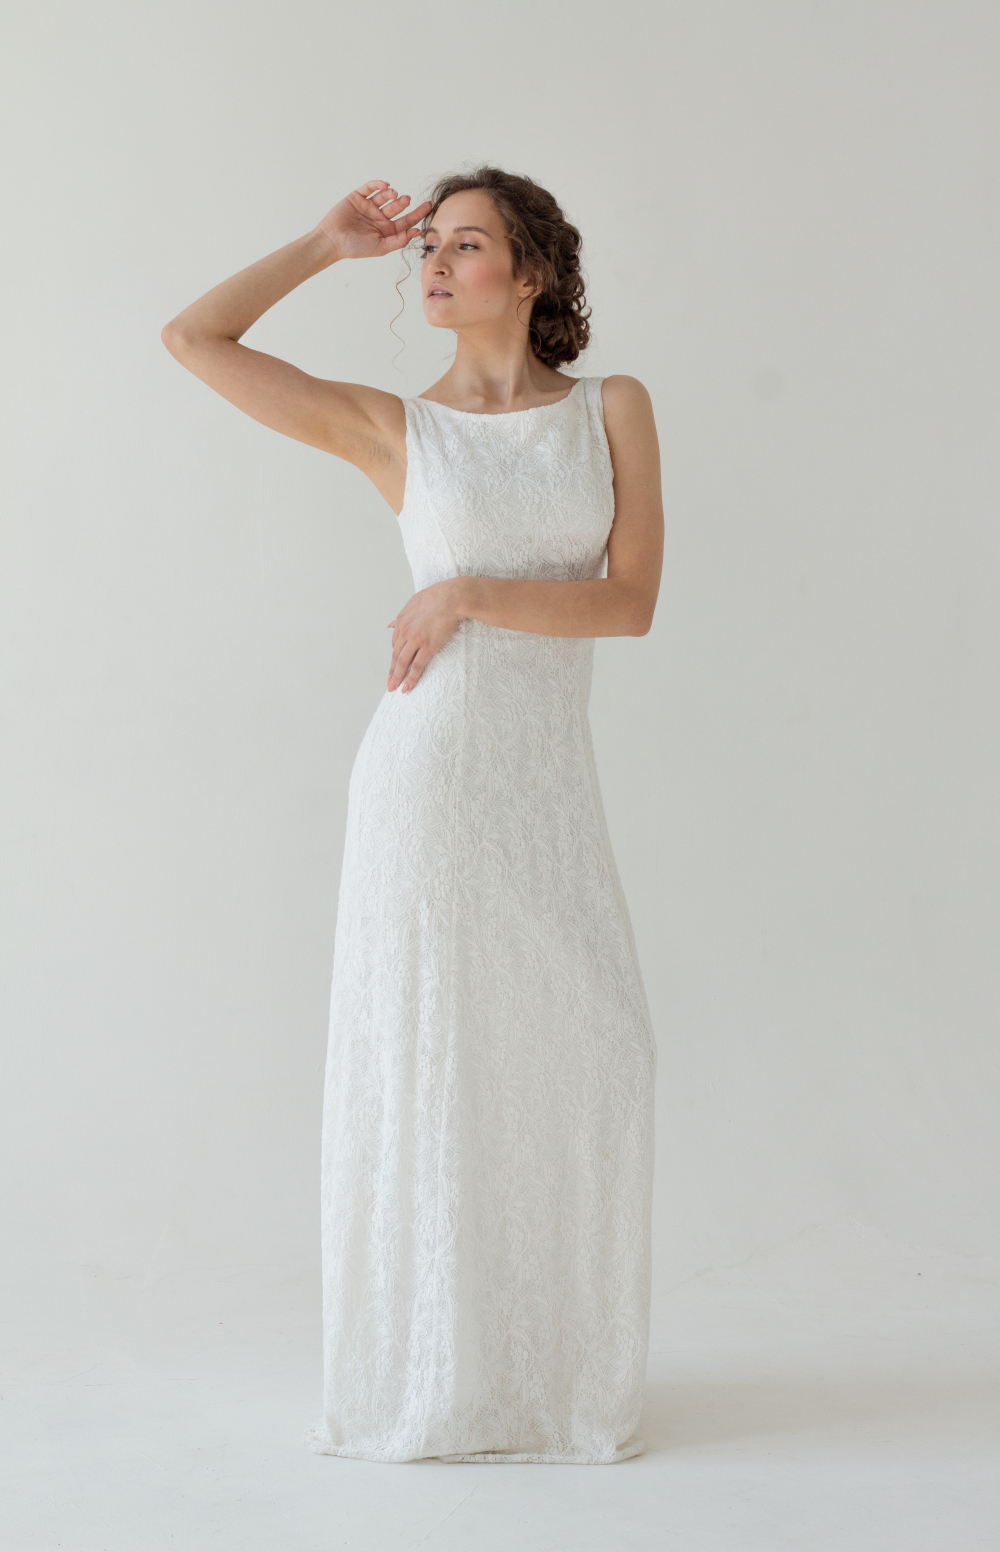 Кружевное, силуэтное свадебное платье молочного оттенка со съемной юбкой из фатина. Подчеркивает фигуру. Фактурное, цветочное кружево украшает платье. Размер 42-44.